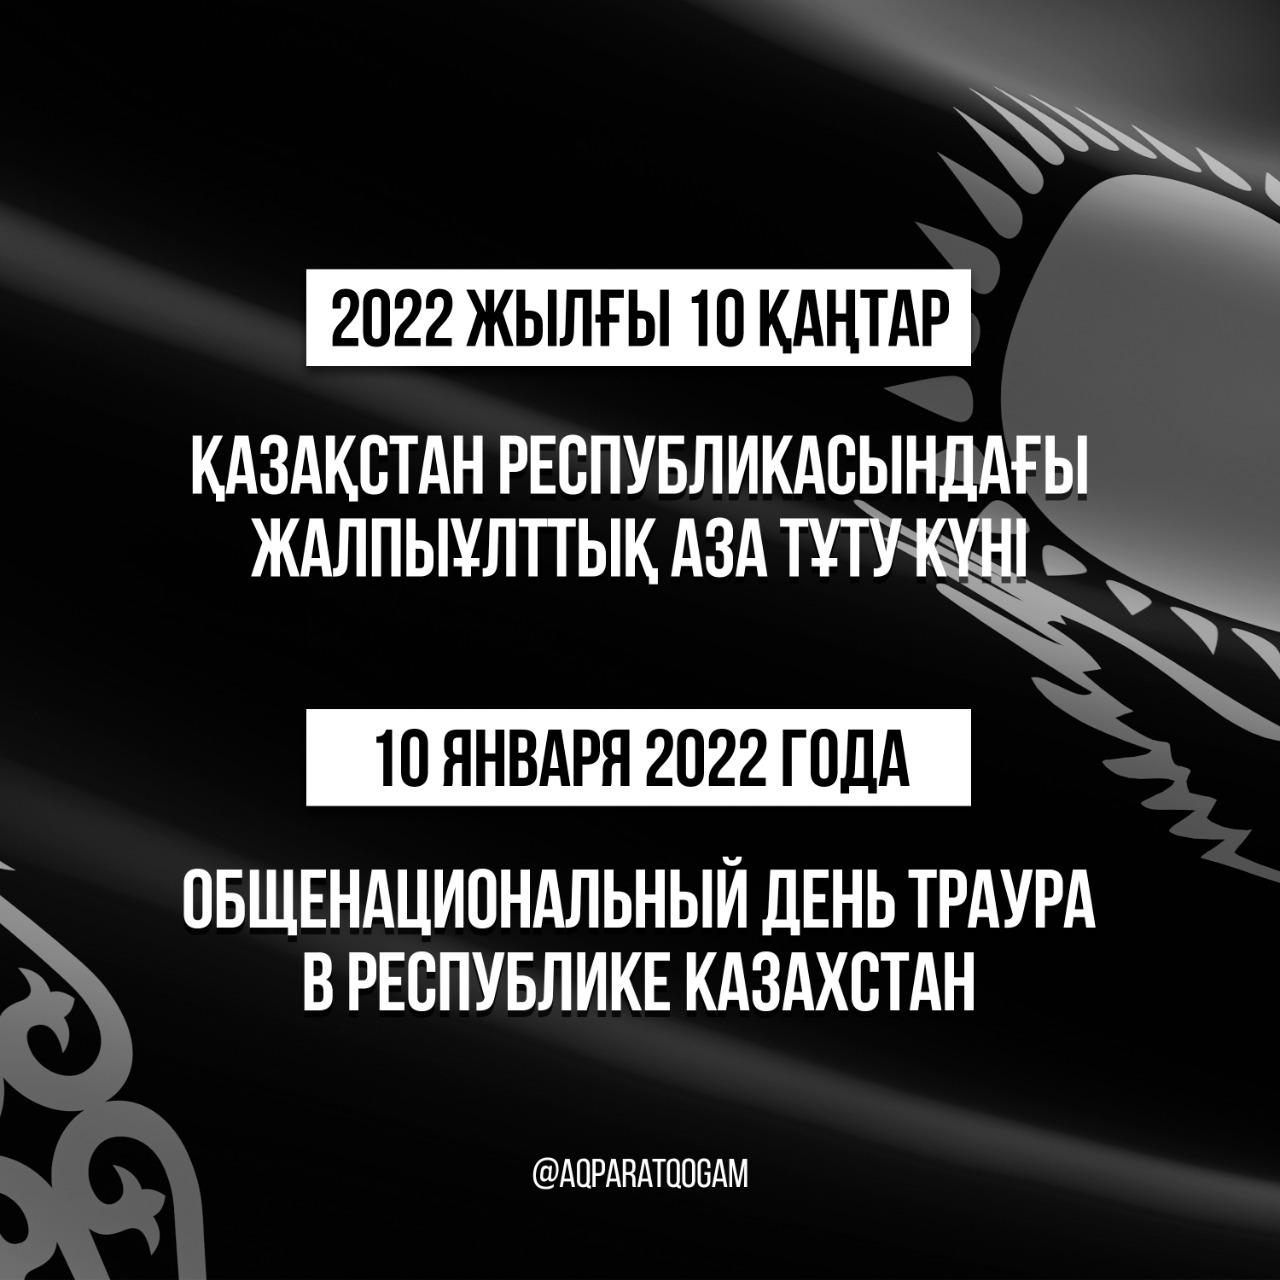 10 января 2022 года день общенационального траура в Республике Казахстан